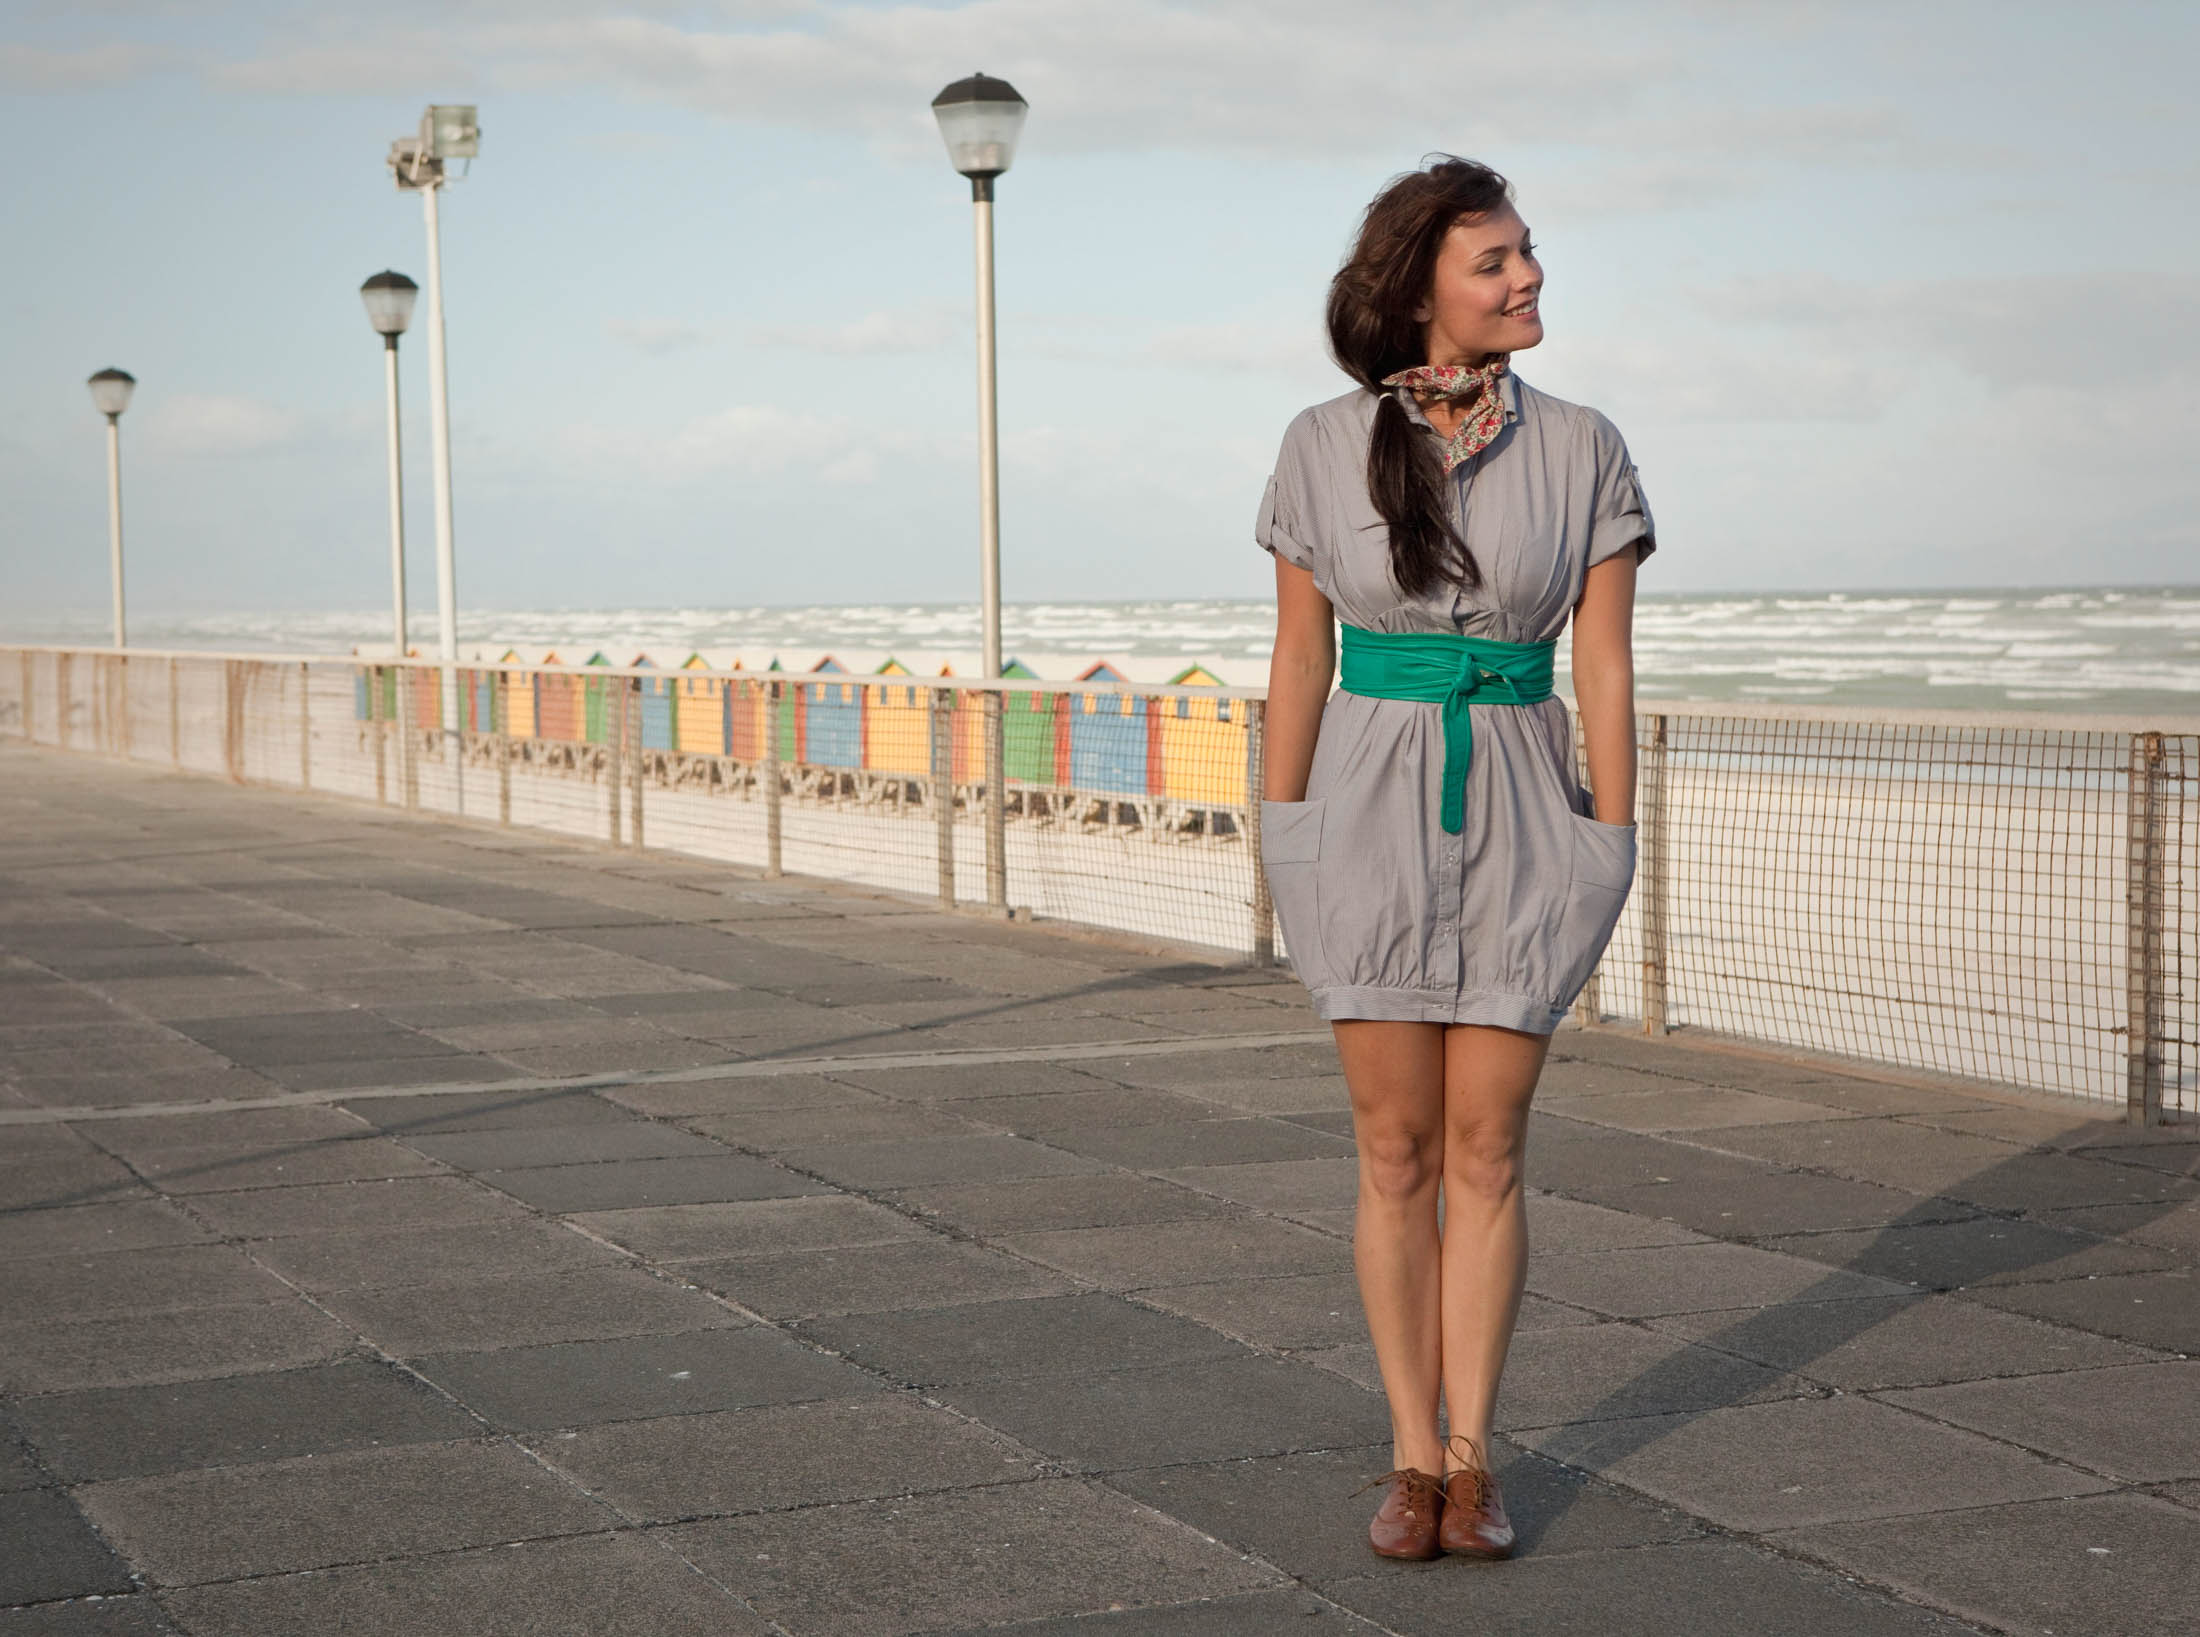 Eine Frau steht auf einer Strandpromenade, blickt mit einem leichten Lächeln nach links, sie trägt ein graues Kleid und einen grünen Gürtel. Im Hintergrund sind bunte Strandhütten und starke Meereswellen unter einem bewölkten Himmel zu sehen. © Fotografie Tomas Rodriguez